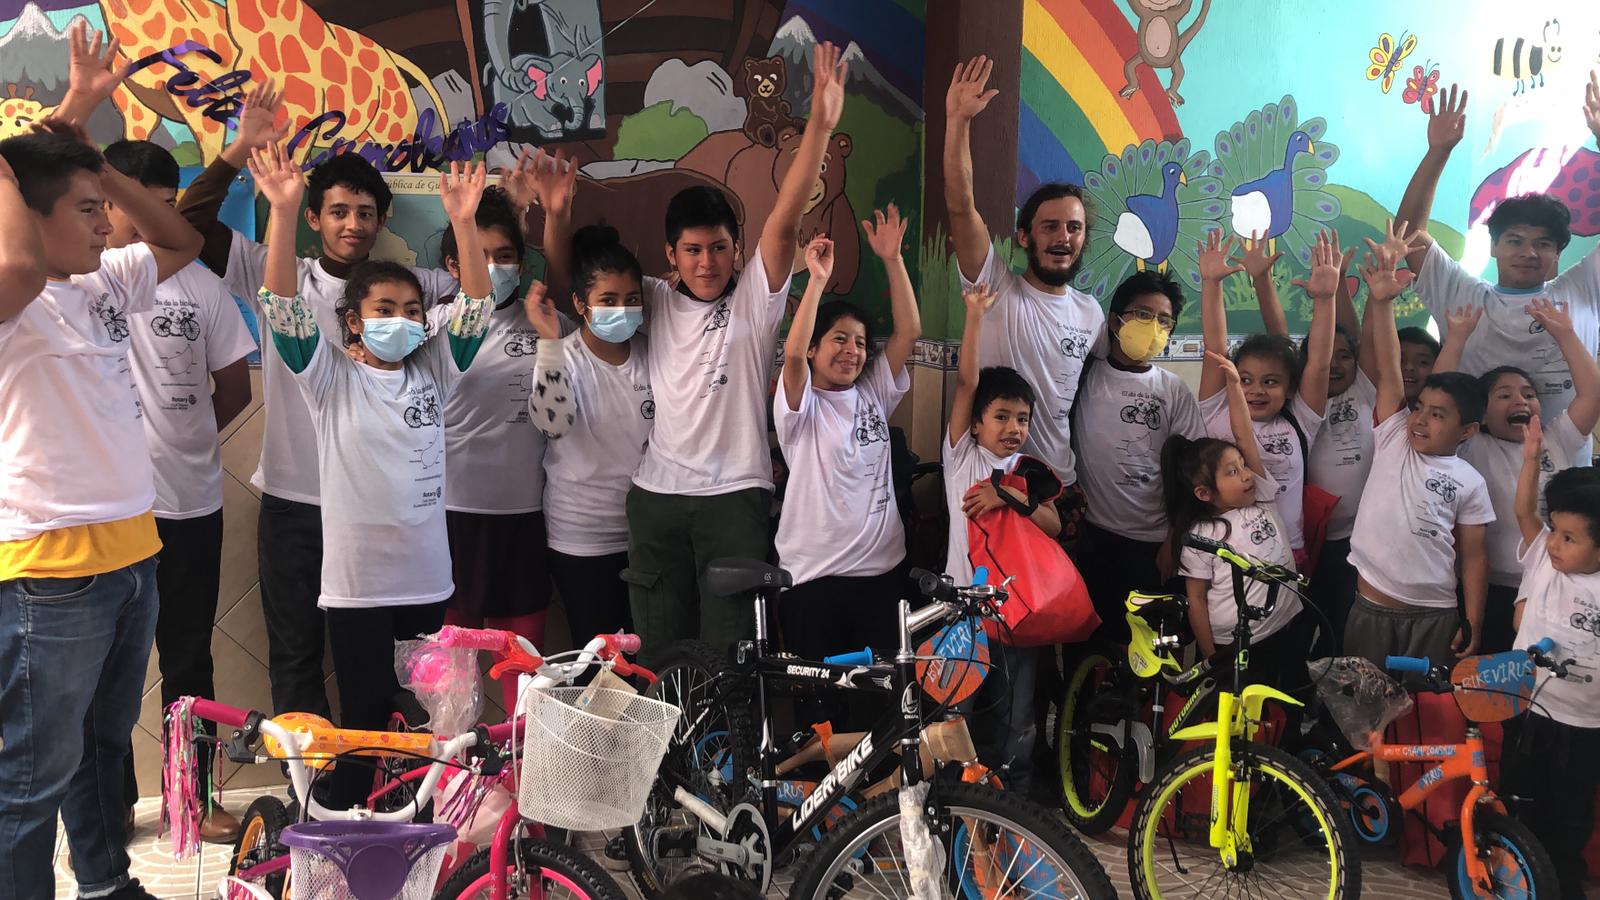 Constant Etahlep comparte su sueño con los niños del mundo.  Aquí regaló bicicletas y detalles a niños guatemaltecos.  (Foto Prensa Libre: cortesía Constant Etahlep)